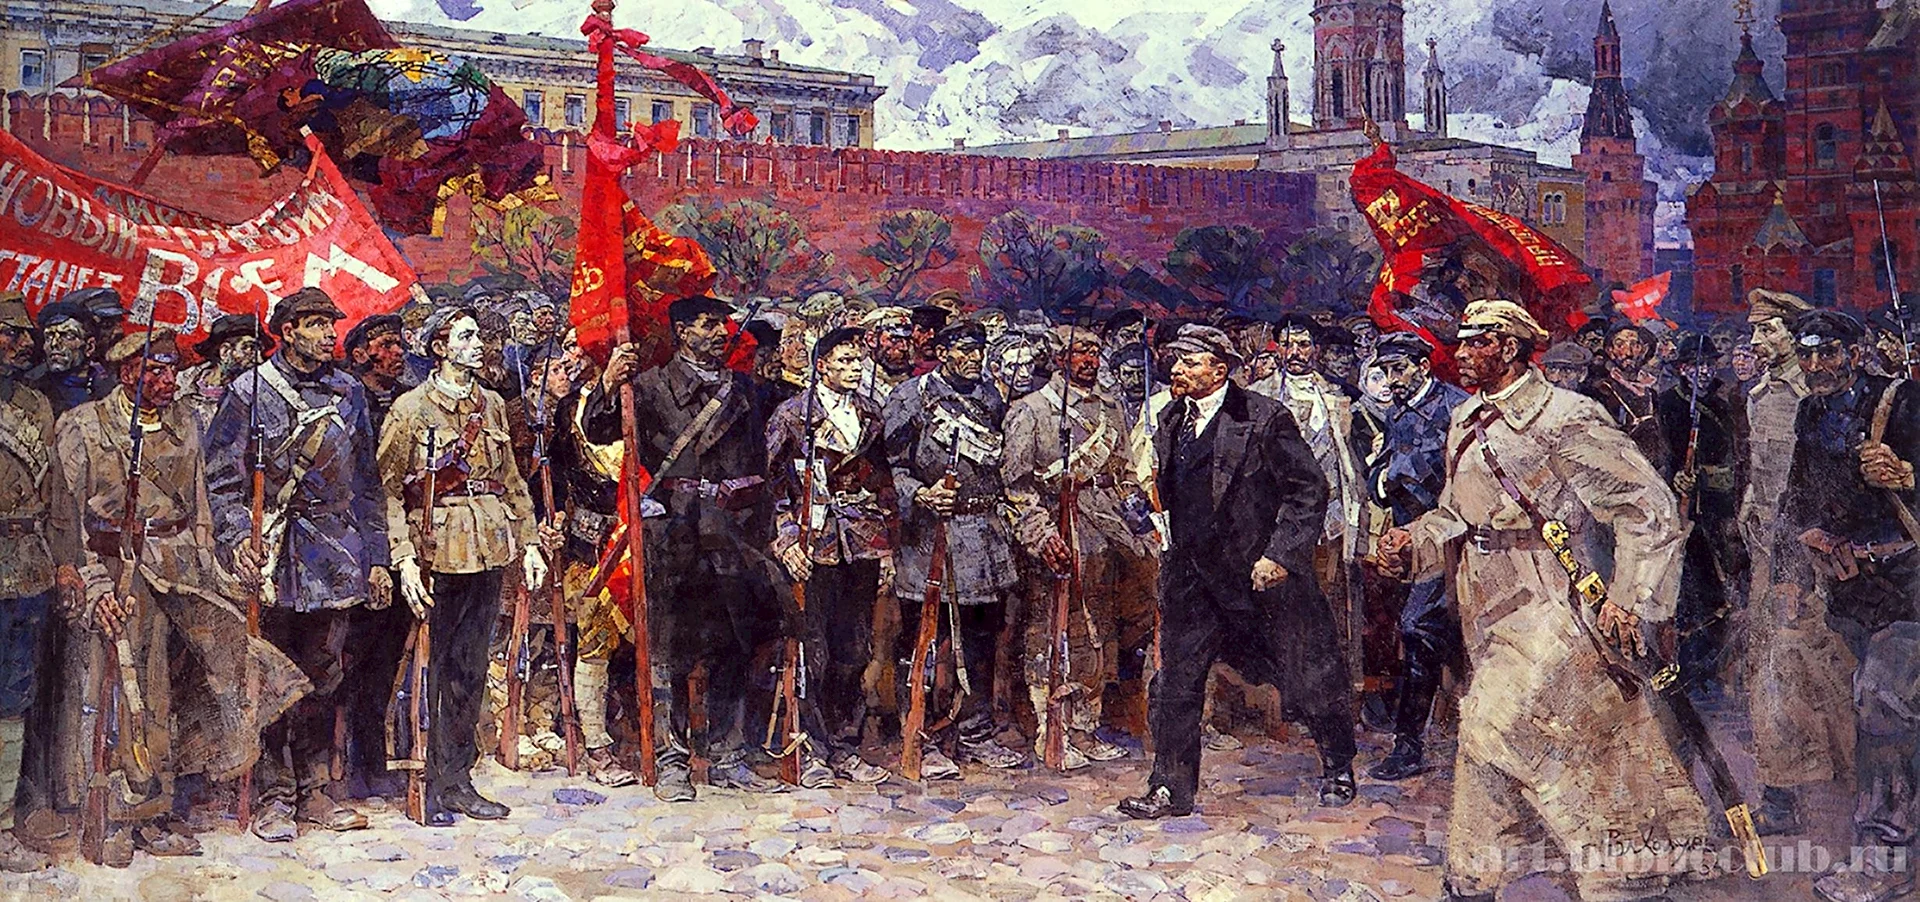 Октябрьская революция 1917 года